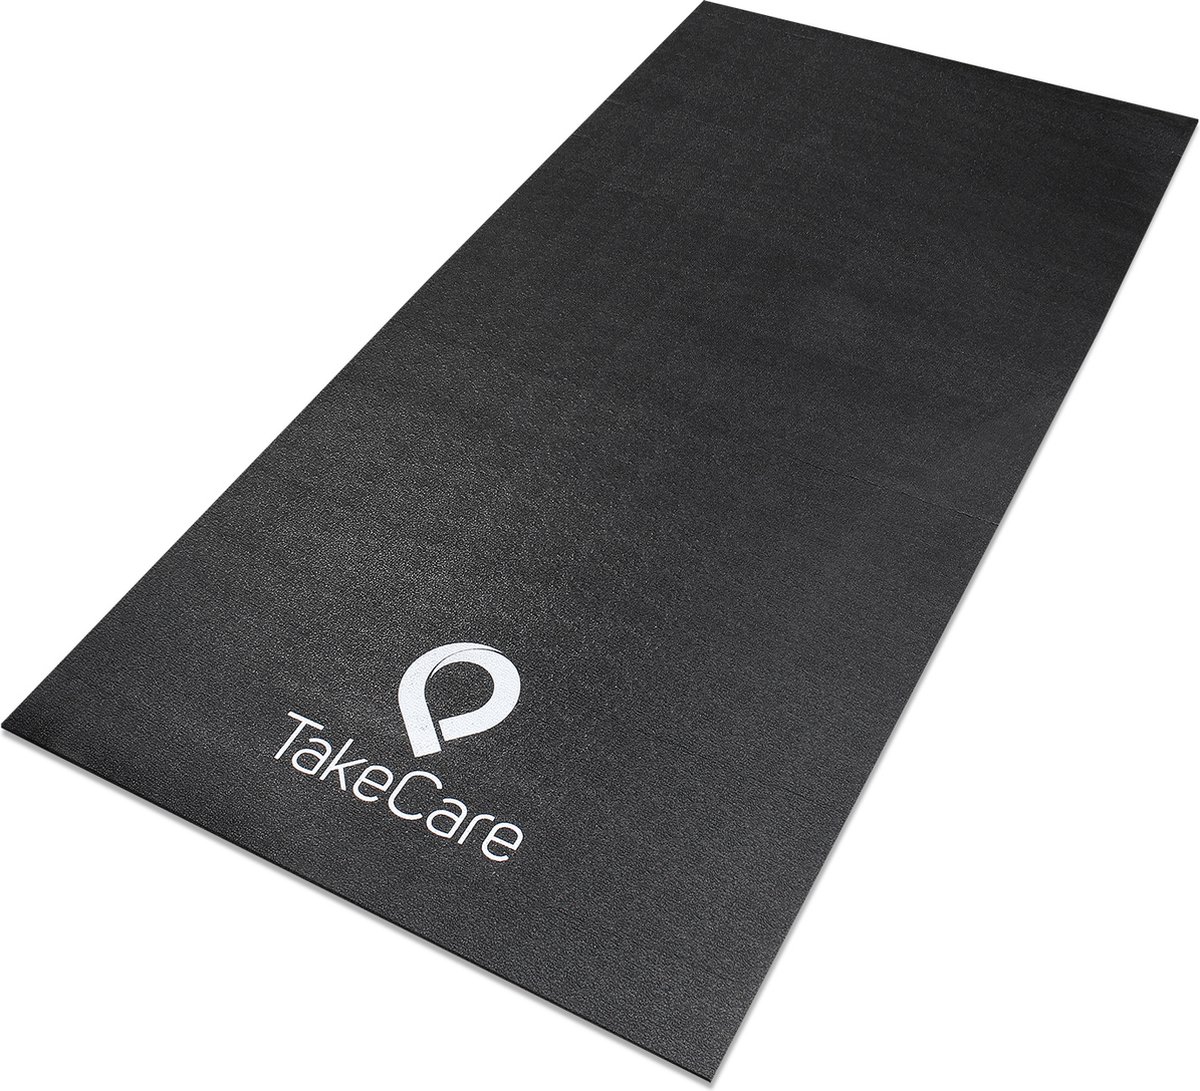 Yoga en Fitness mat anti slip zwart vinyl - Trainingsmat 6mm dik, 160x80 cm - Take Care